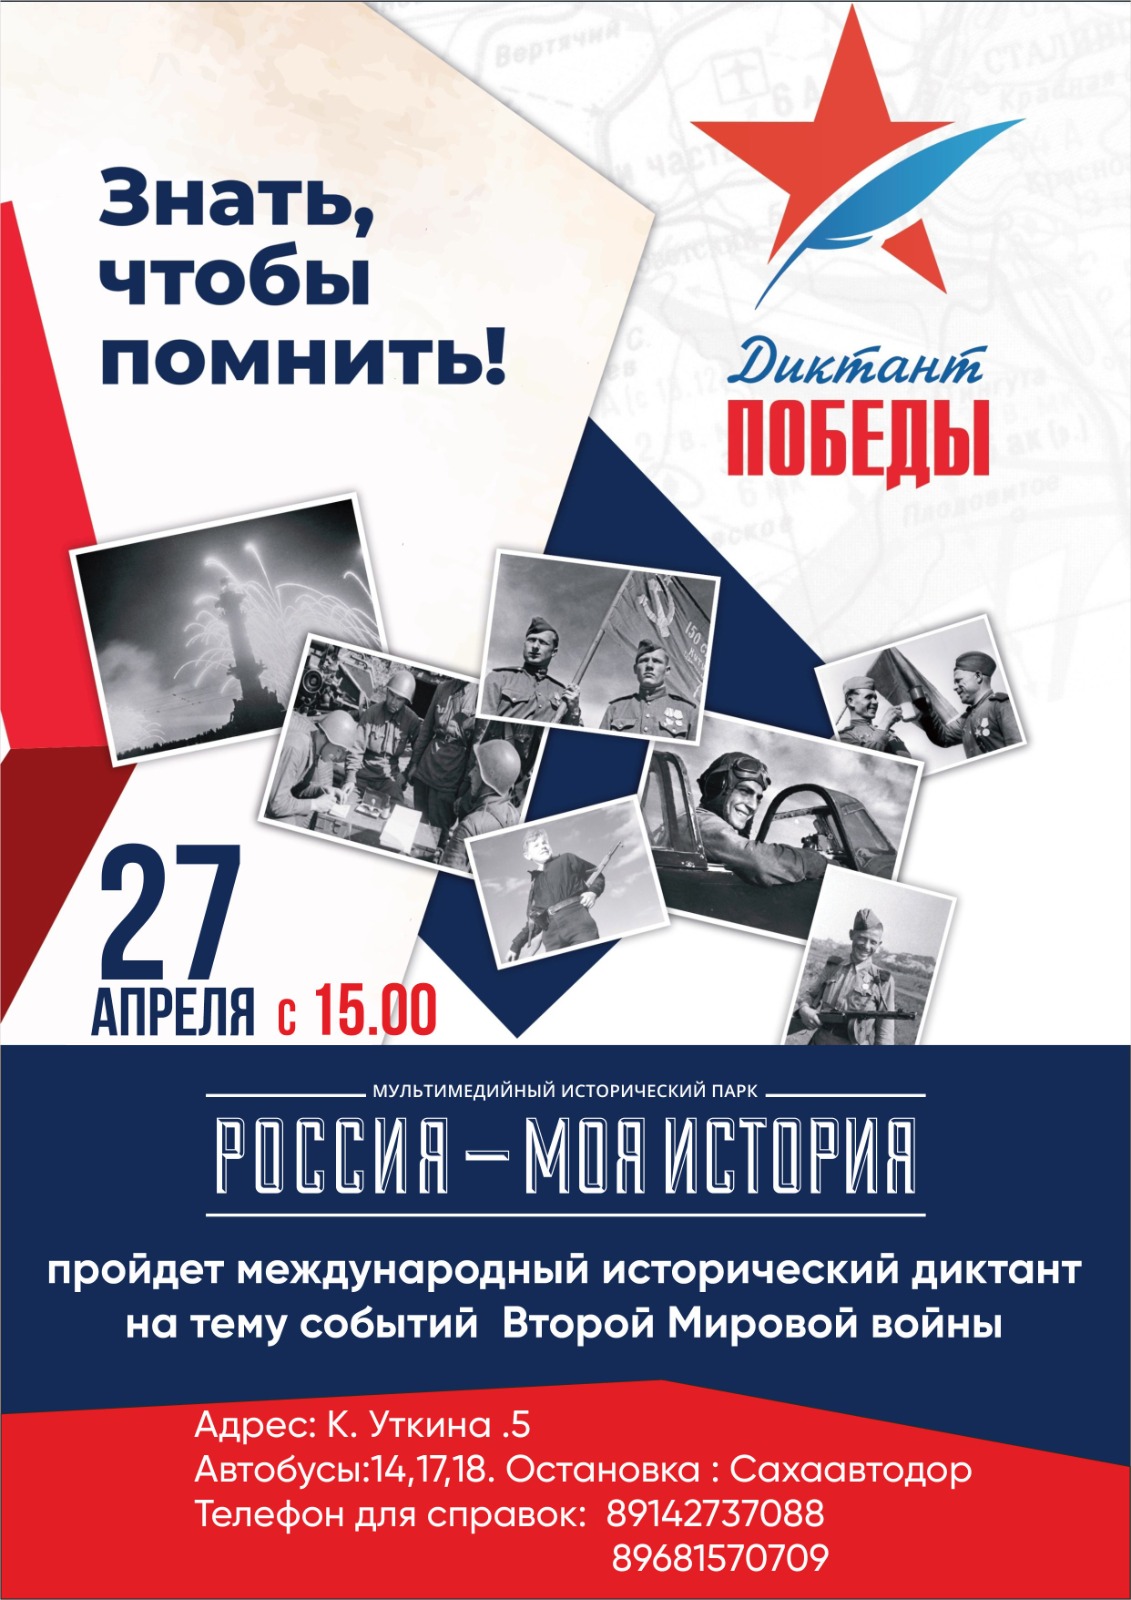 Акция «Диктант Победы» пройдет 27 апреля в парке «Россия – Моя история»